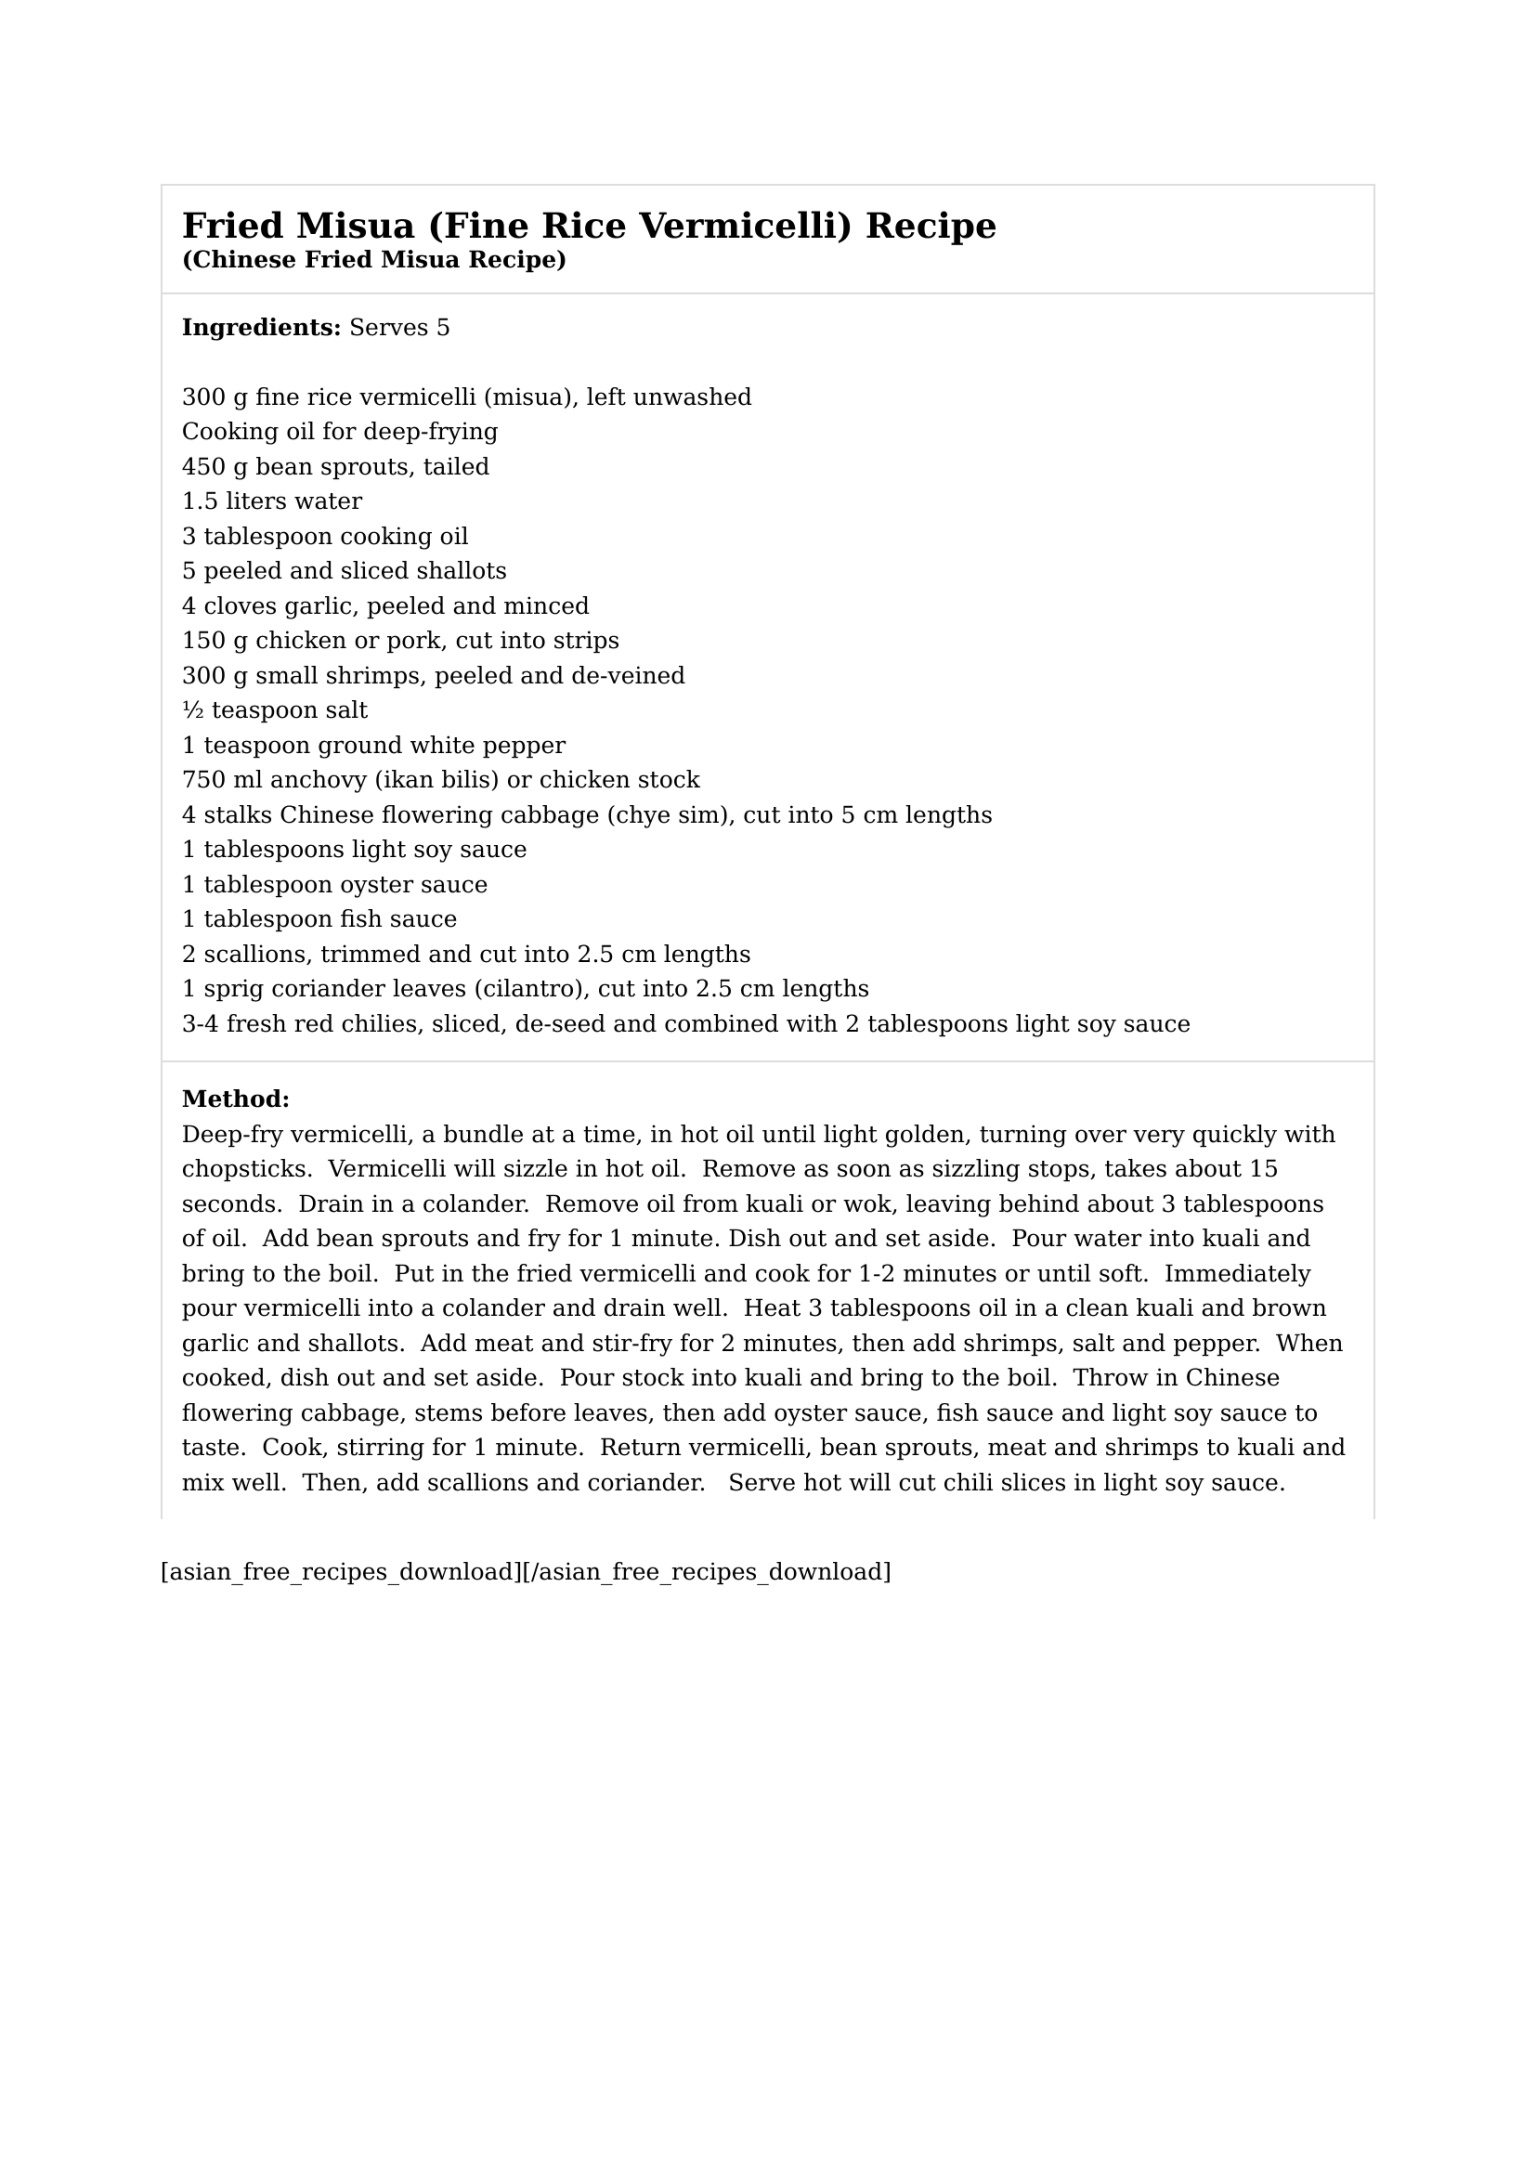 Fried Misua (Fine Rice Vermicelli) Recipe